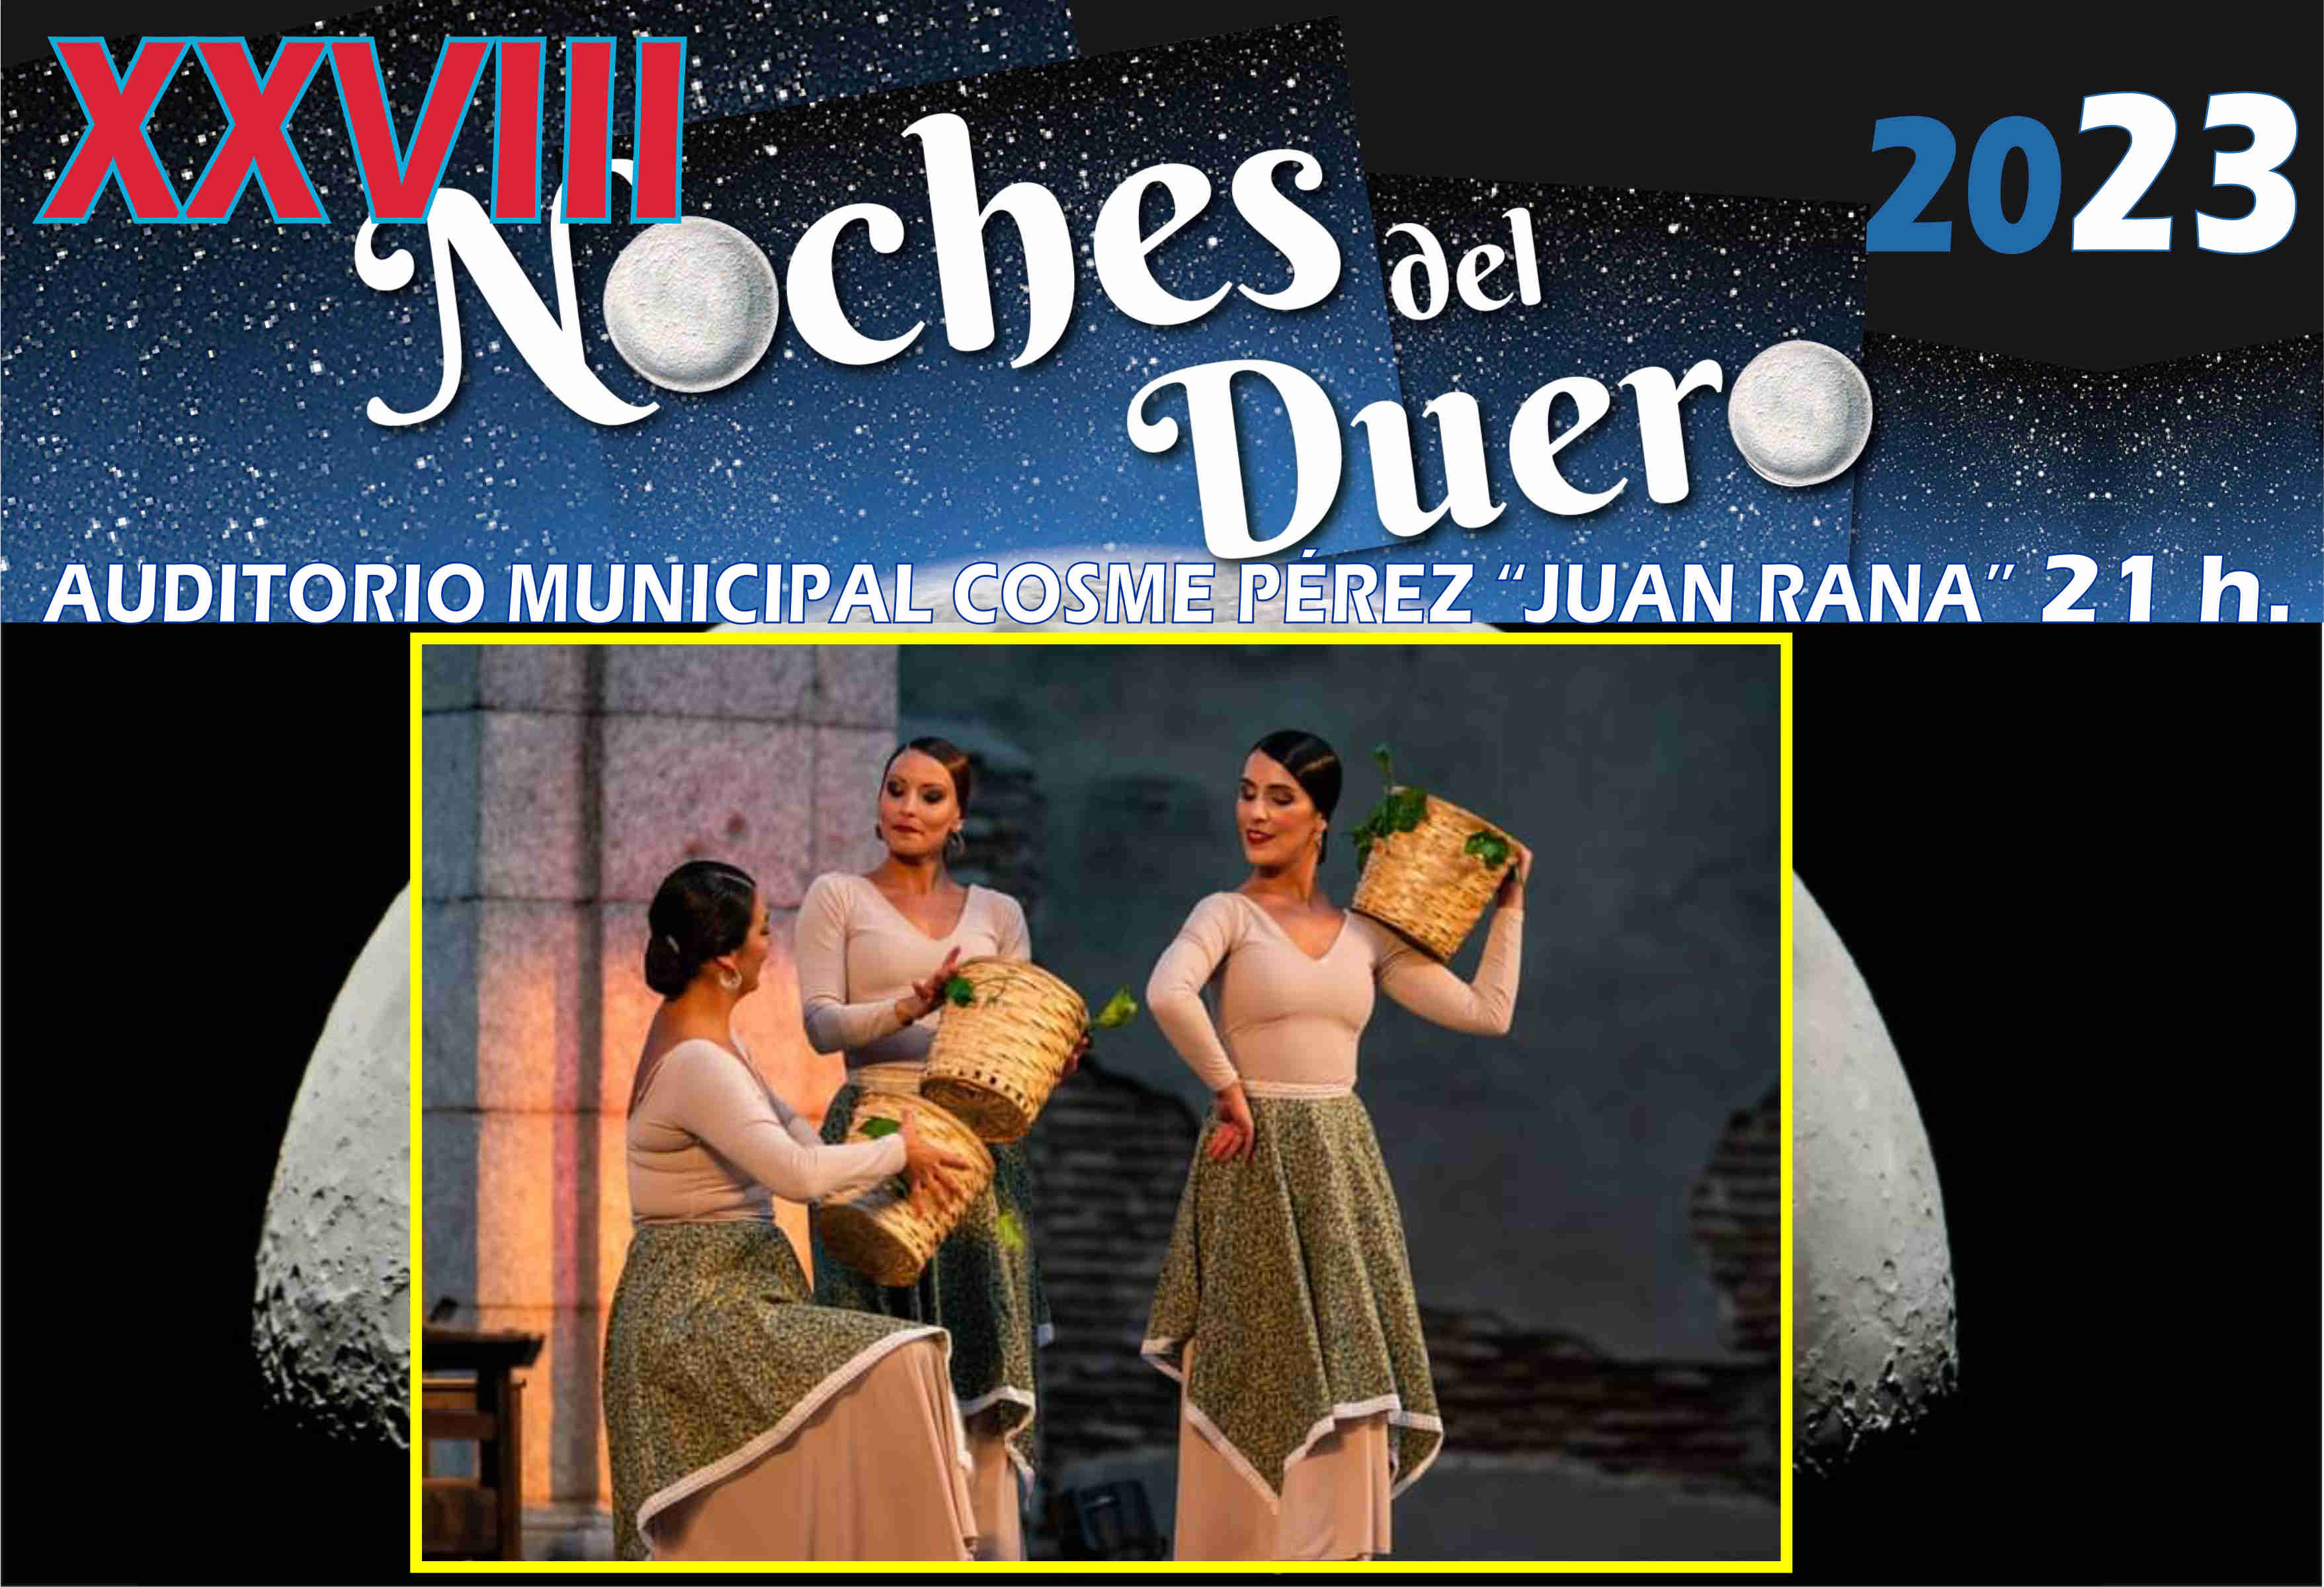 La danza y la música se citan en Valladolid del 26 de julio y el 1 de agosto